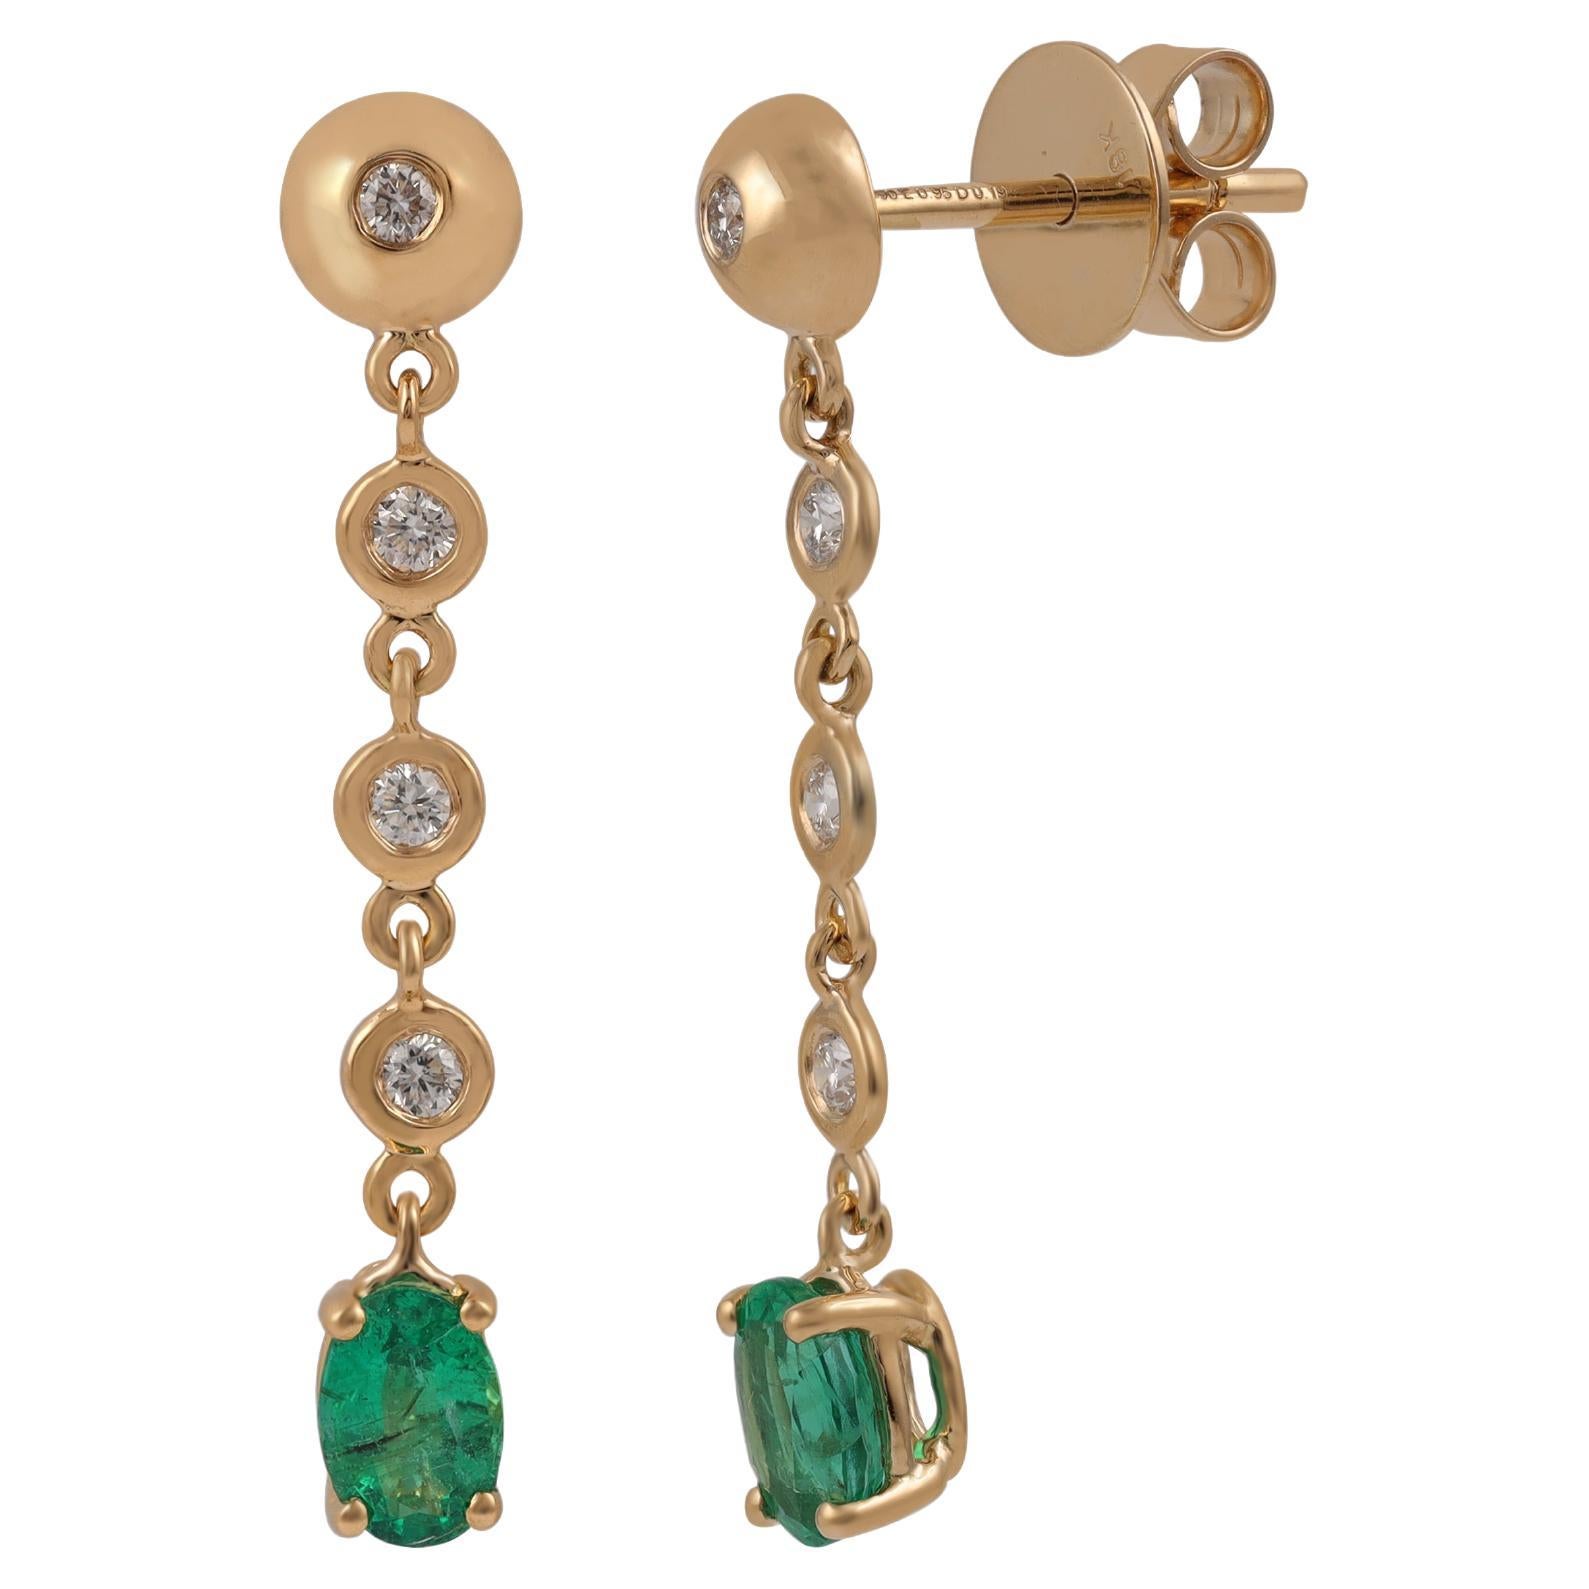 0.95 Carat Zambian Emerald & Diamond Earrings in 18k Gold For Sale